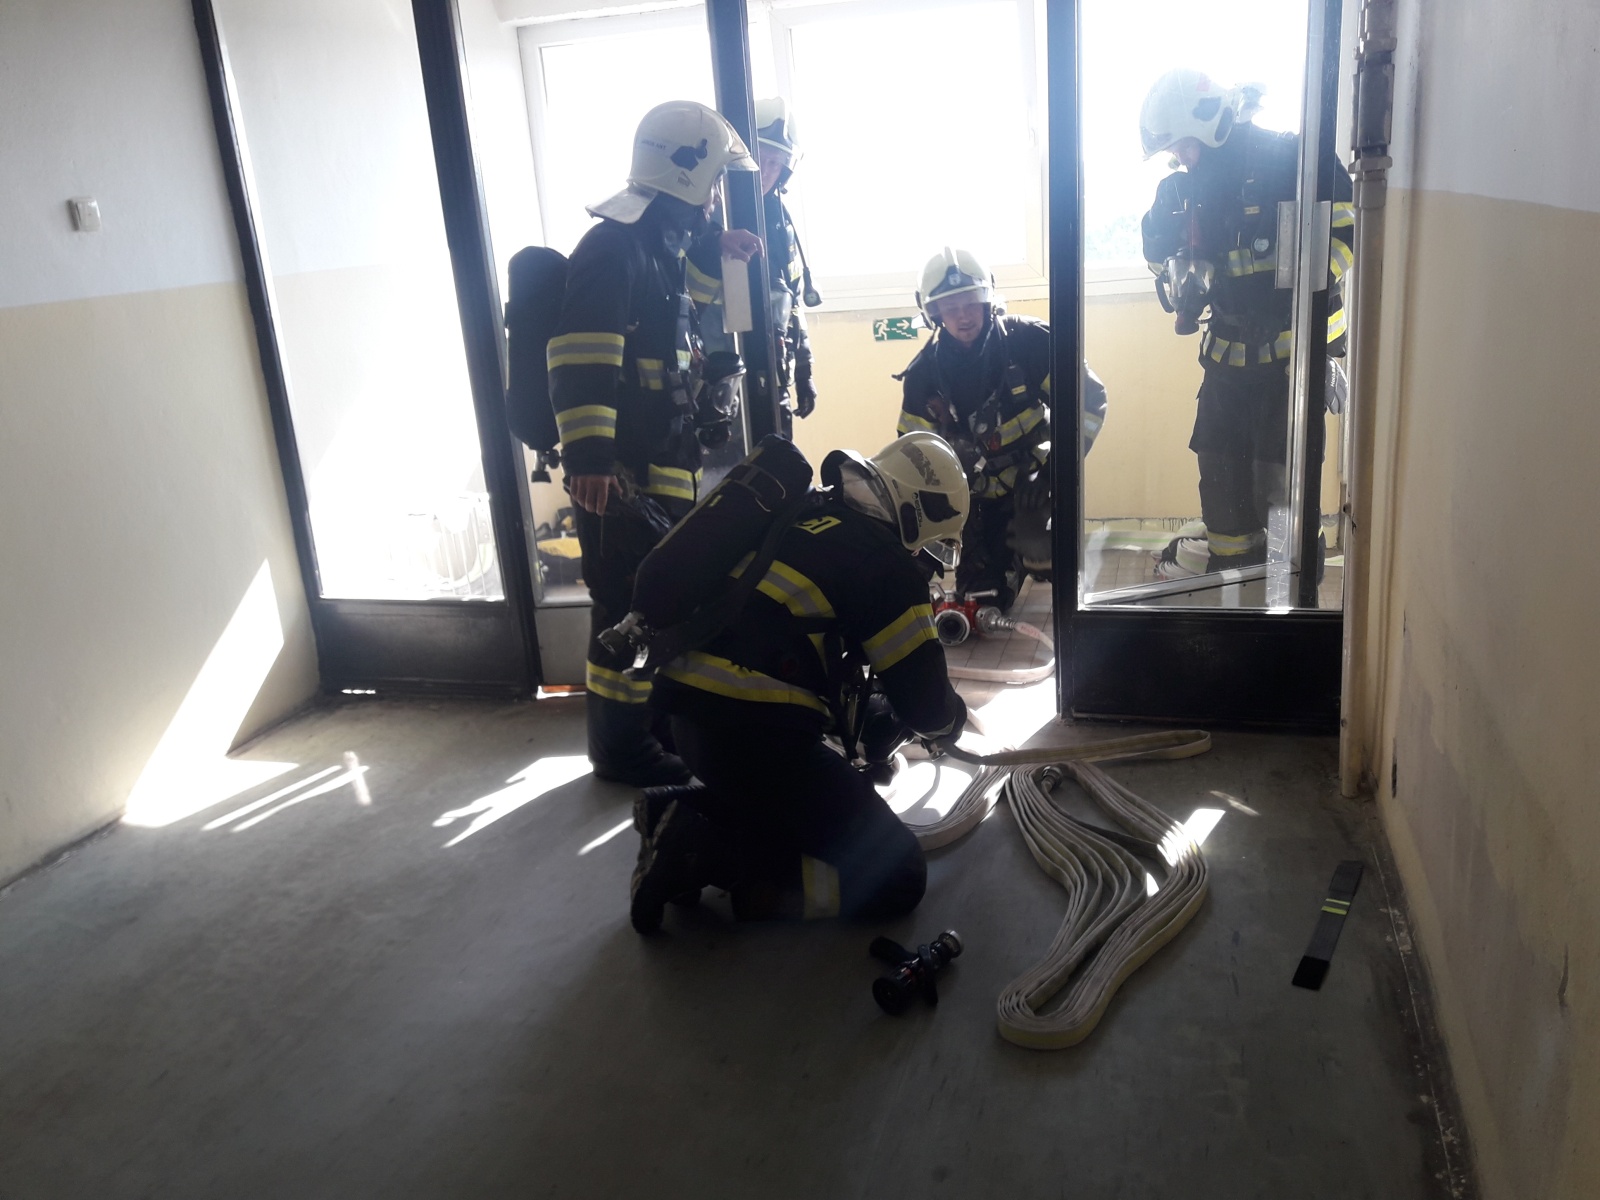 002 - hasiči museli při cvičení natáhnout dlouhé metry hadic.jpg